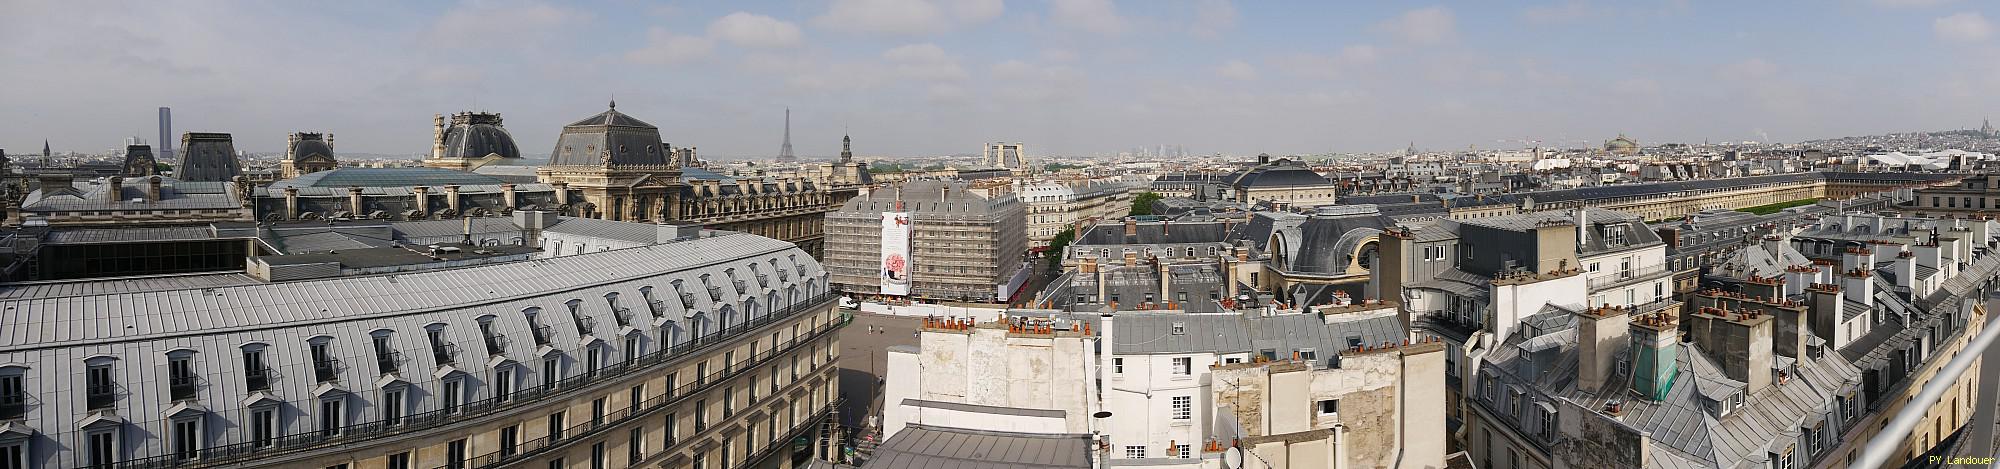 Paris vu d'en haut, 182 rue St-Honor